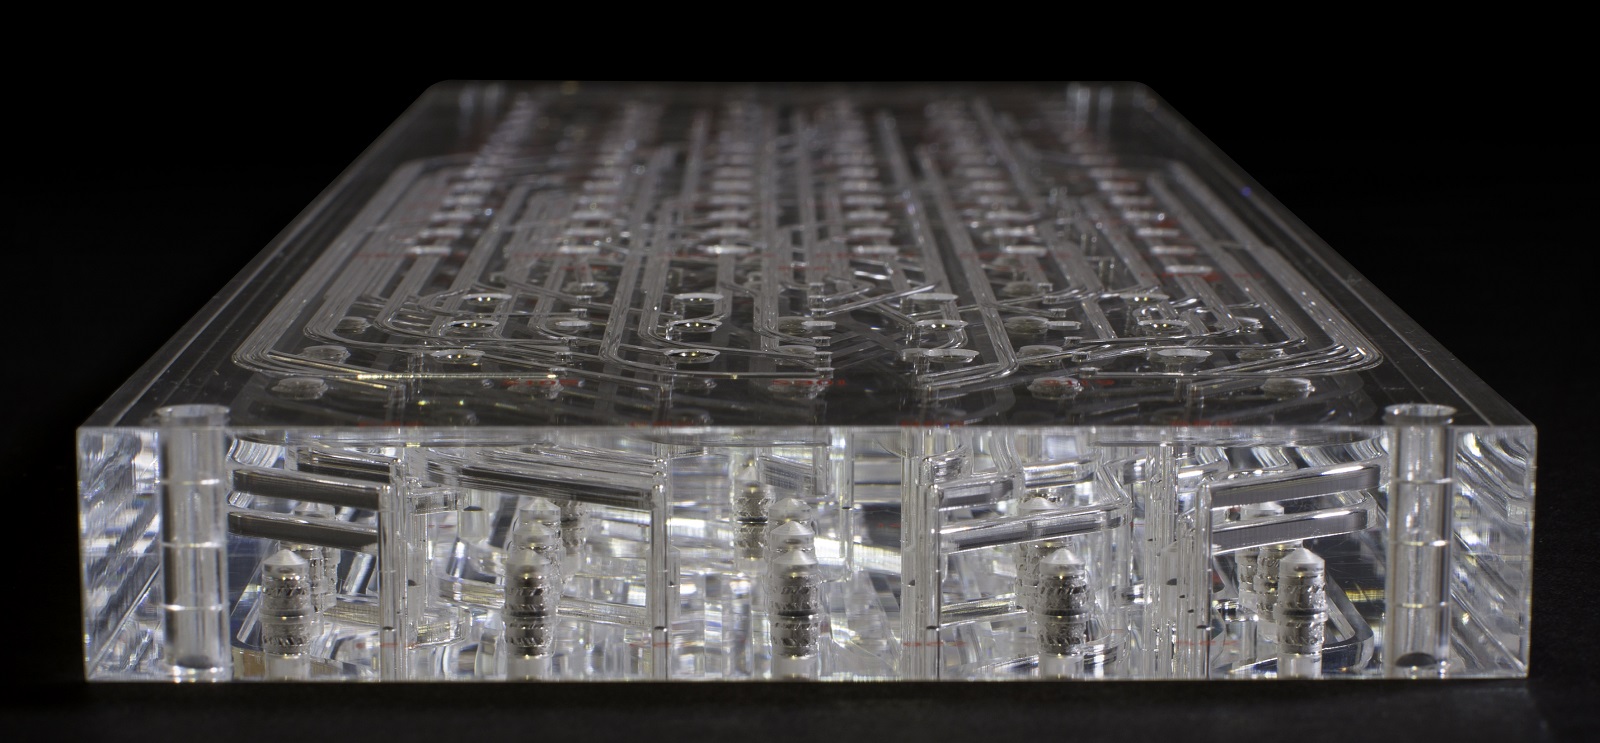 Microfluidics "Multi-layer" Device